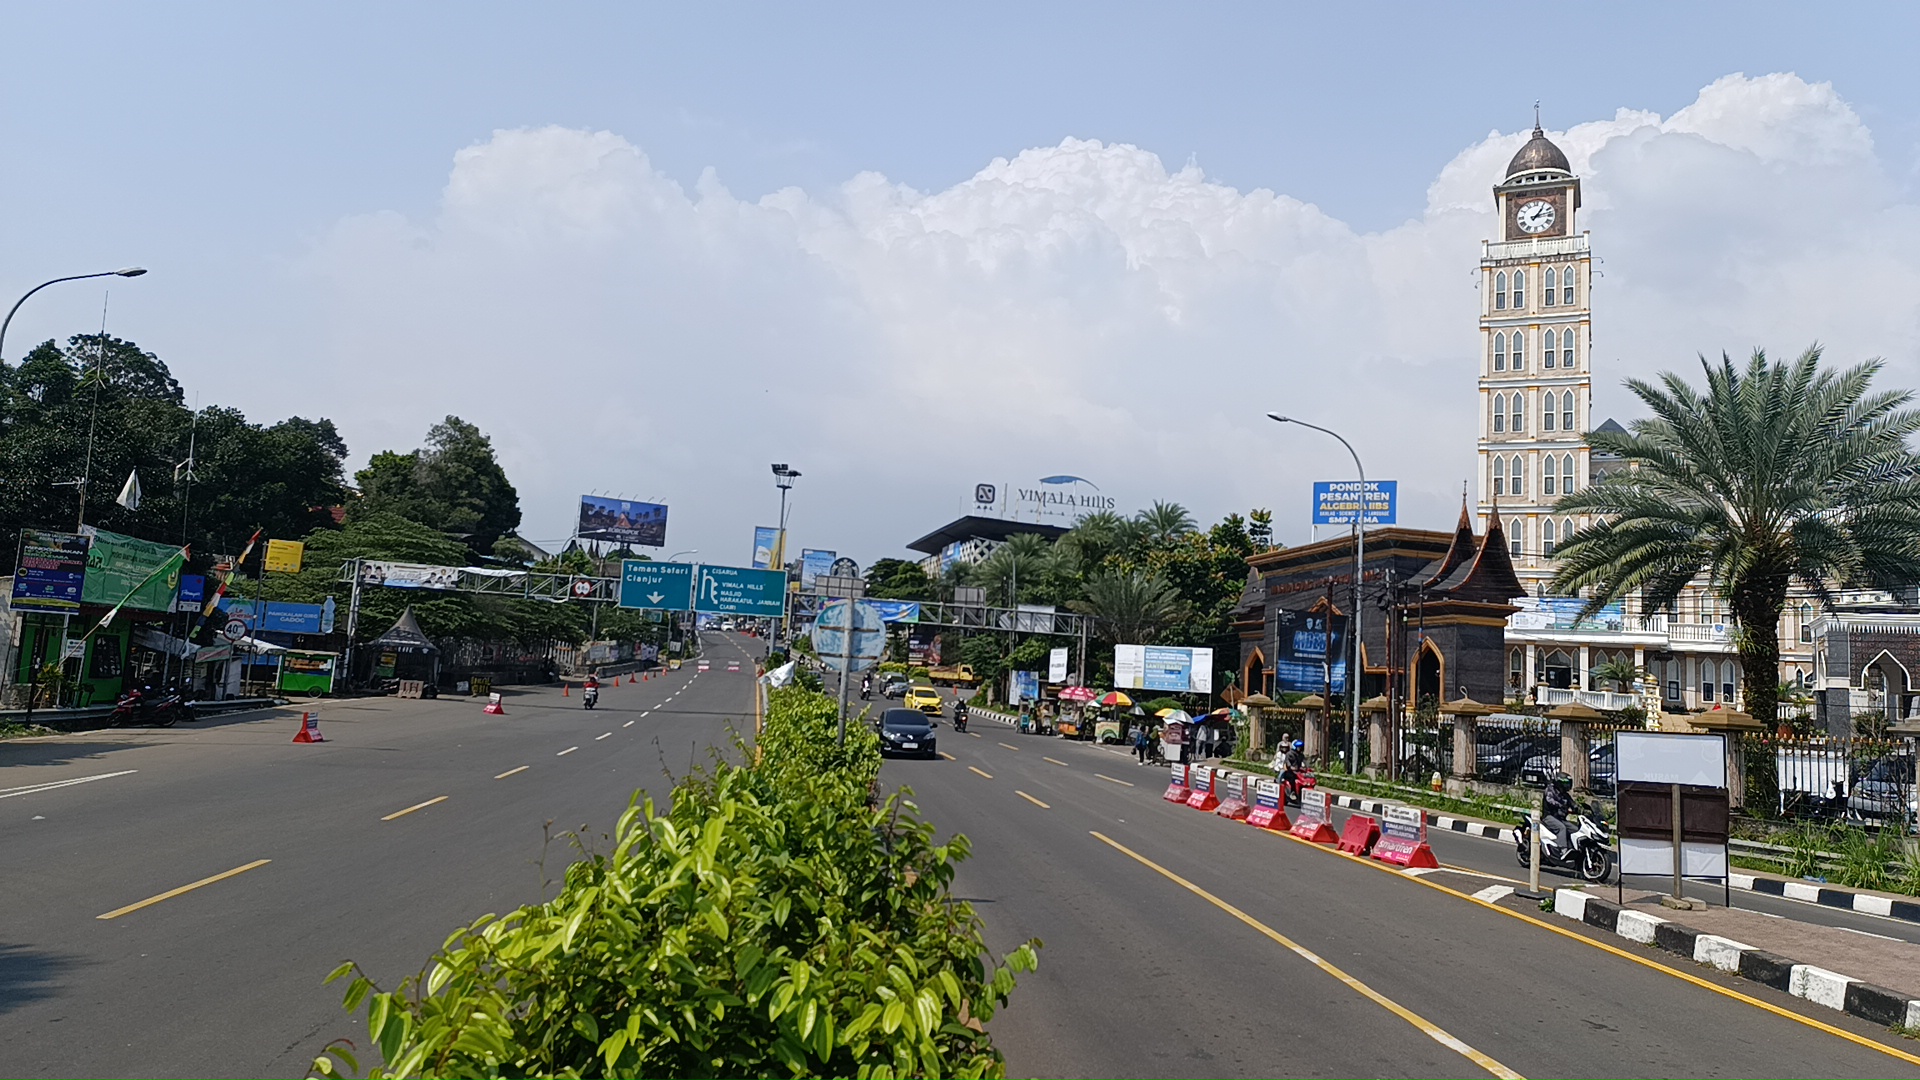  Libur Panjang, Puncak Bogor Berlakukan One Way Arah Jakarta